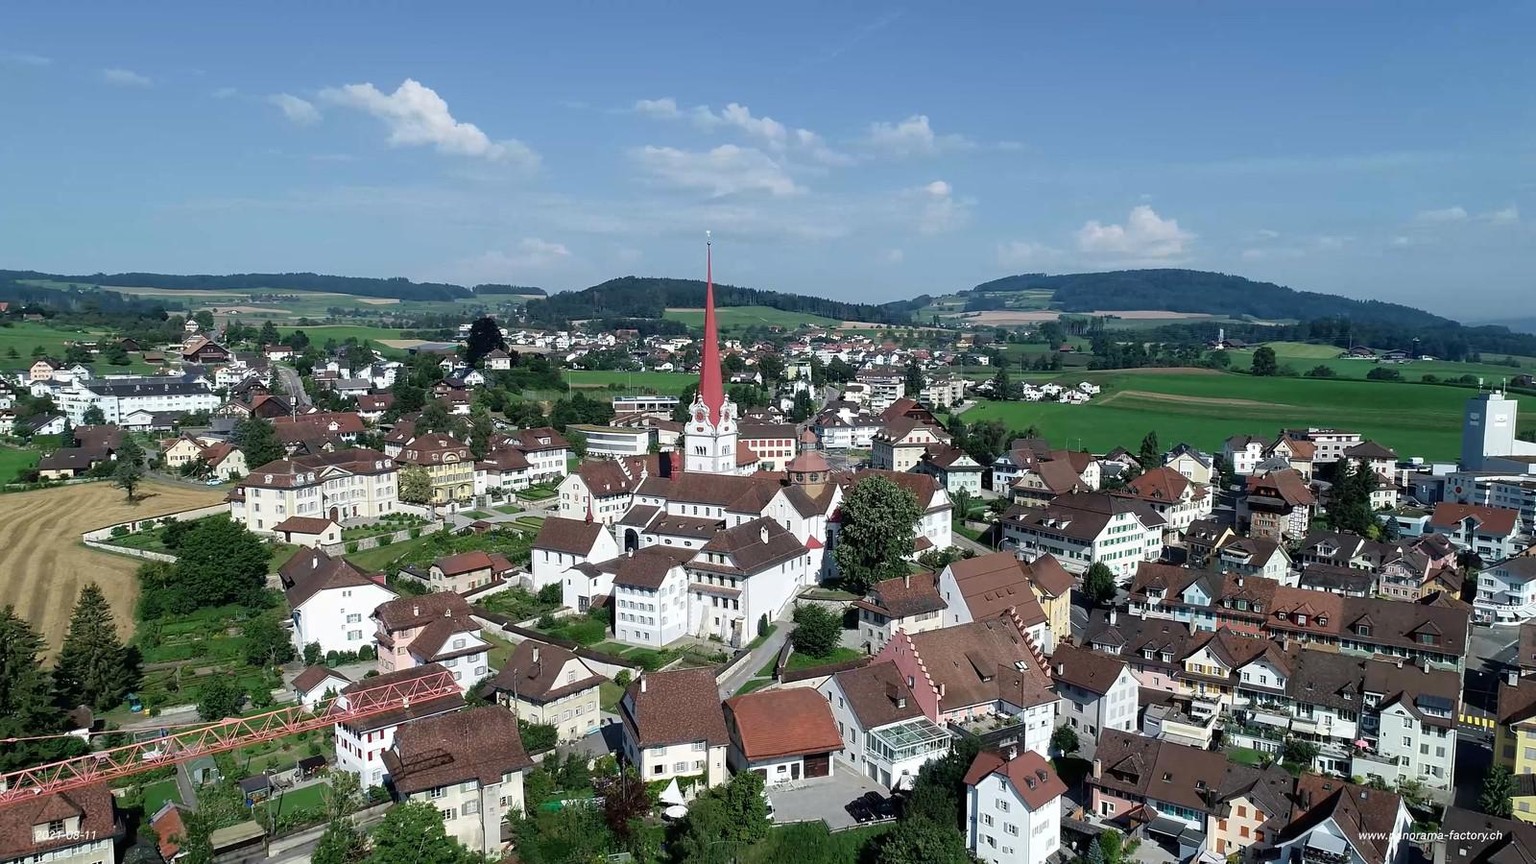 Beromünster, Chorherrenstift St.Michael. Katholisch geprägtes Luzernbiet an der Nahtstelle zum reformierten Aargau, ehemals Untertanenland von Bern.